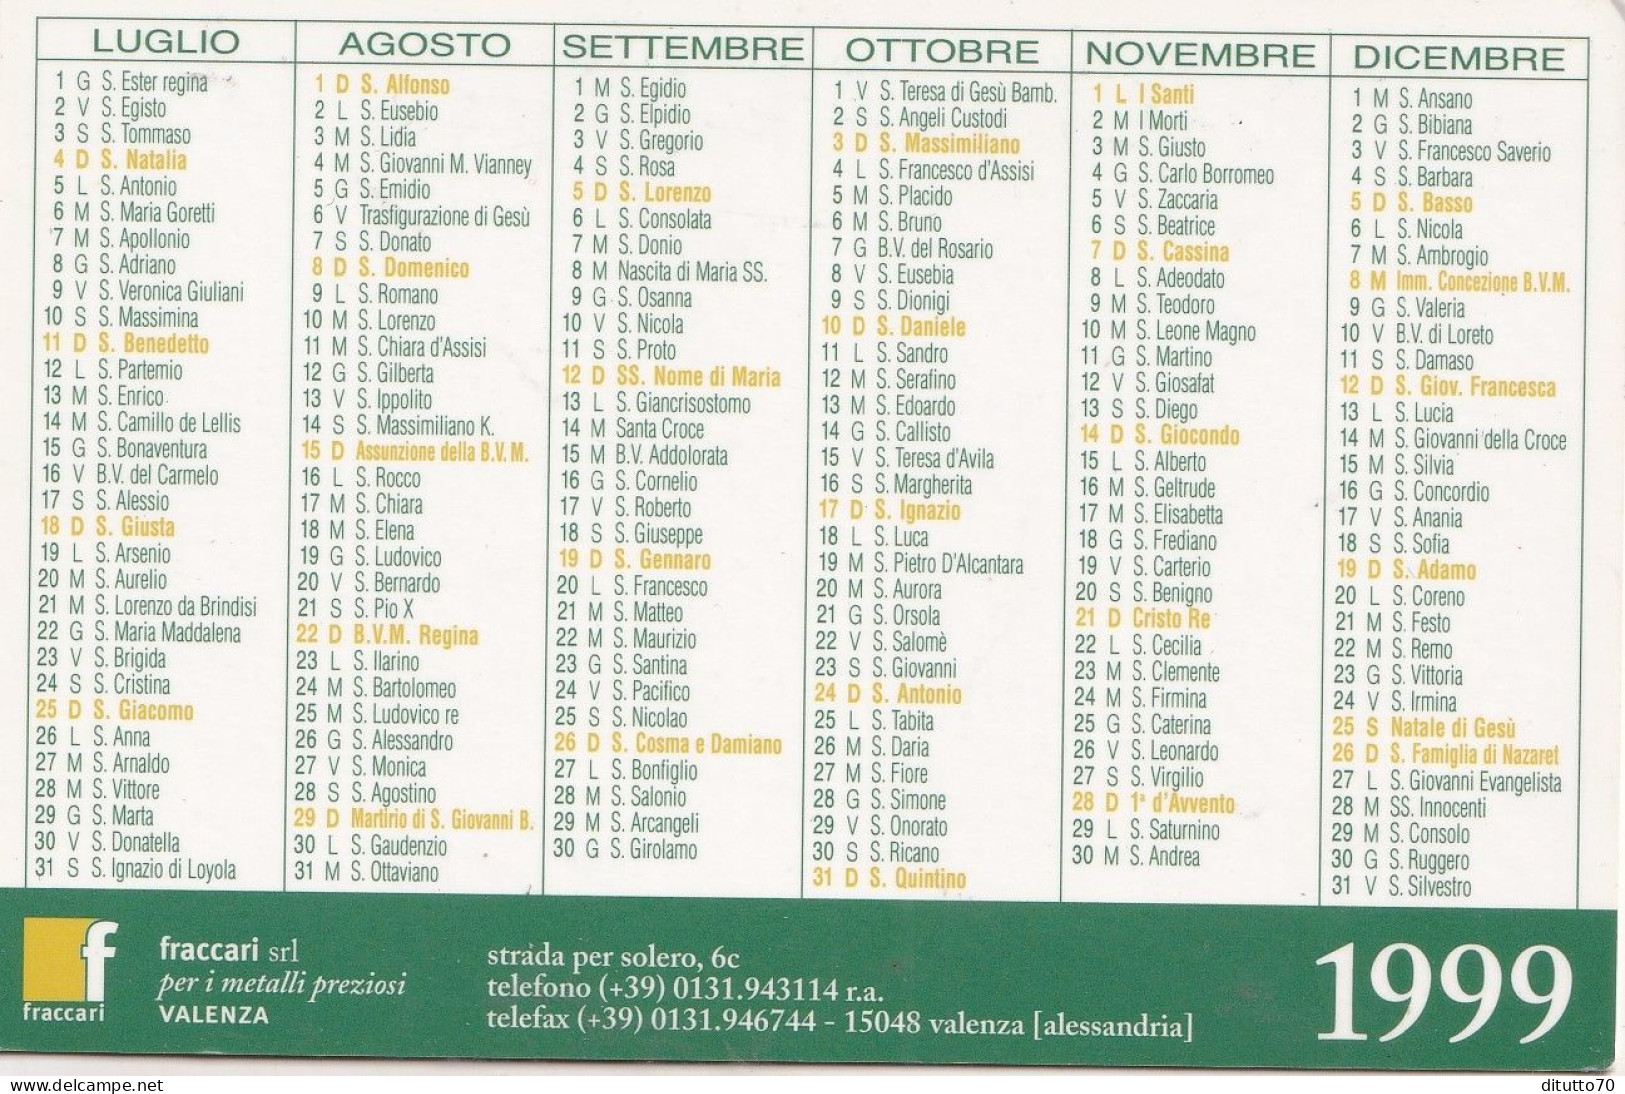 Calendarietto - Fraccari - Valenza - Anno 1999 - Kleinformat : 1991-00